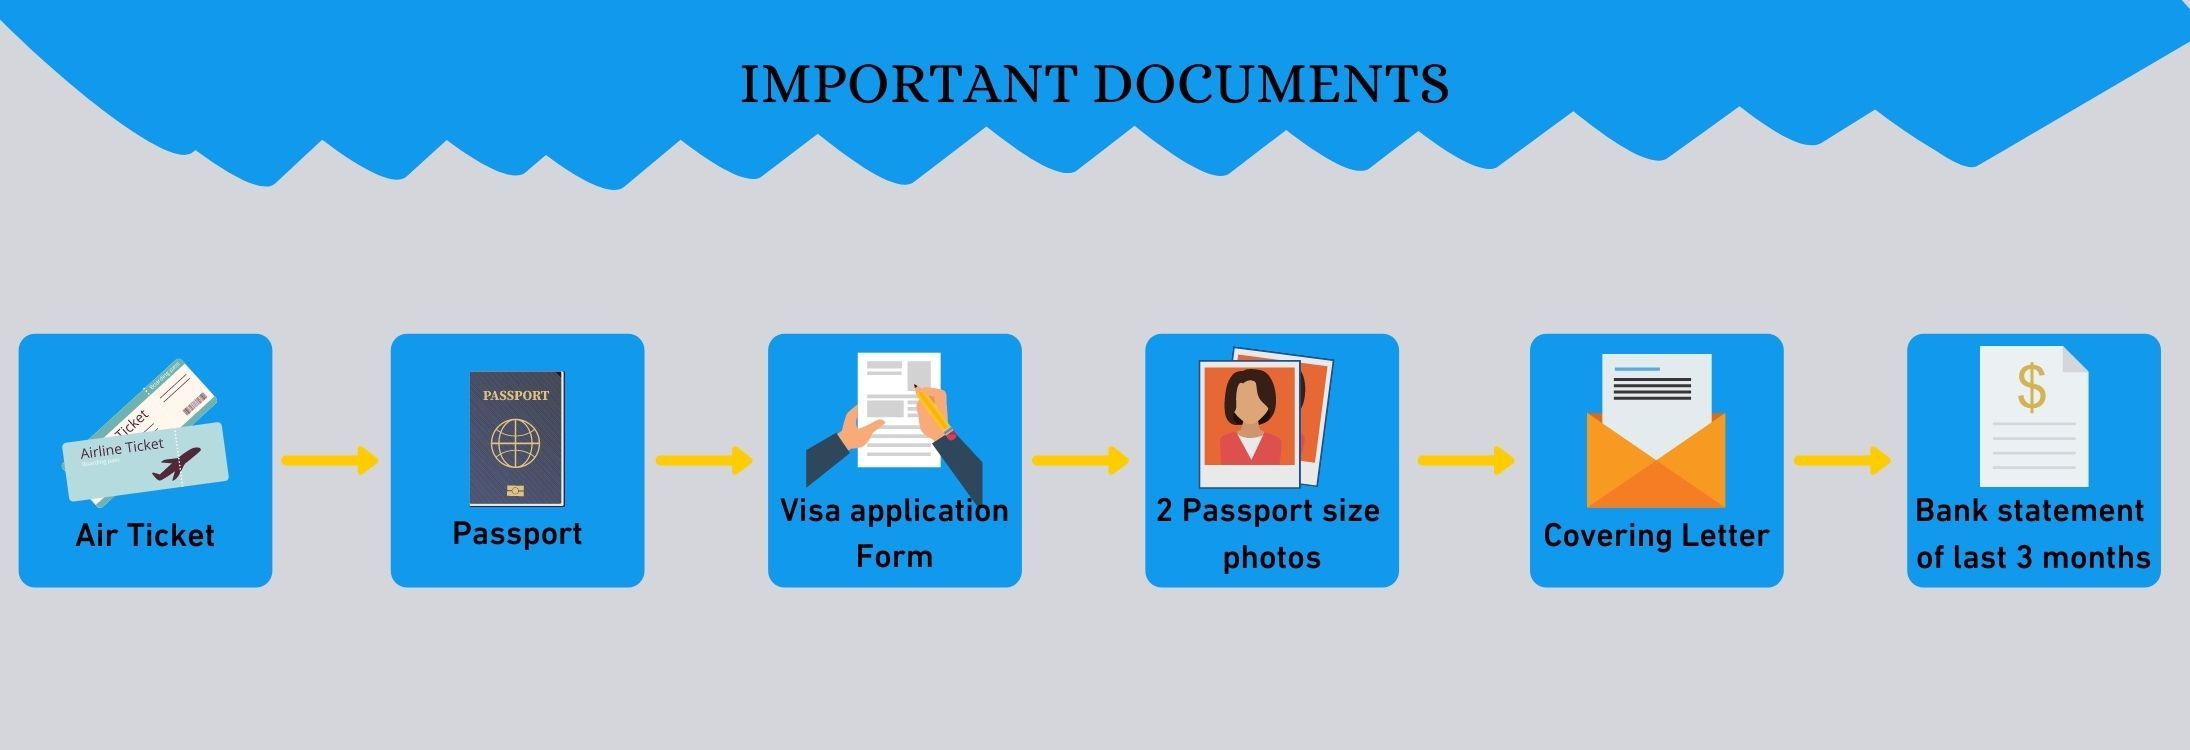 Important documents for Sri Lanka tourist visa